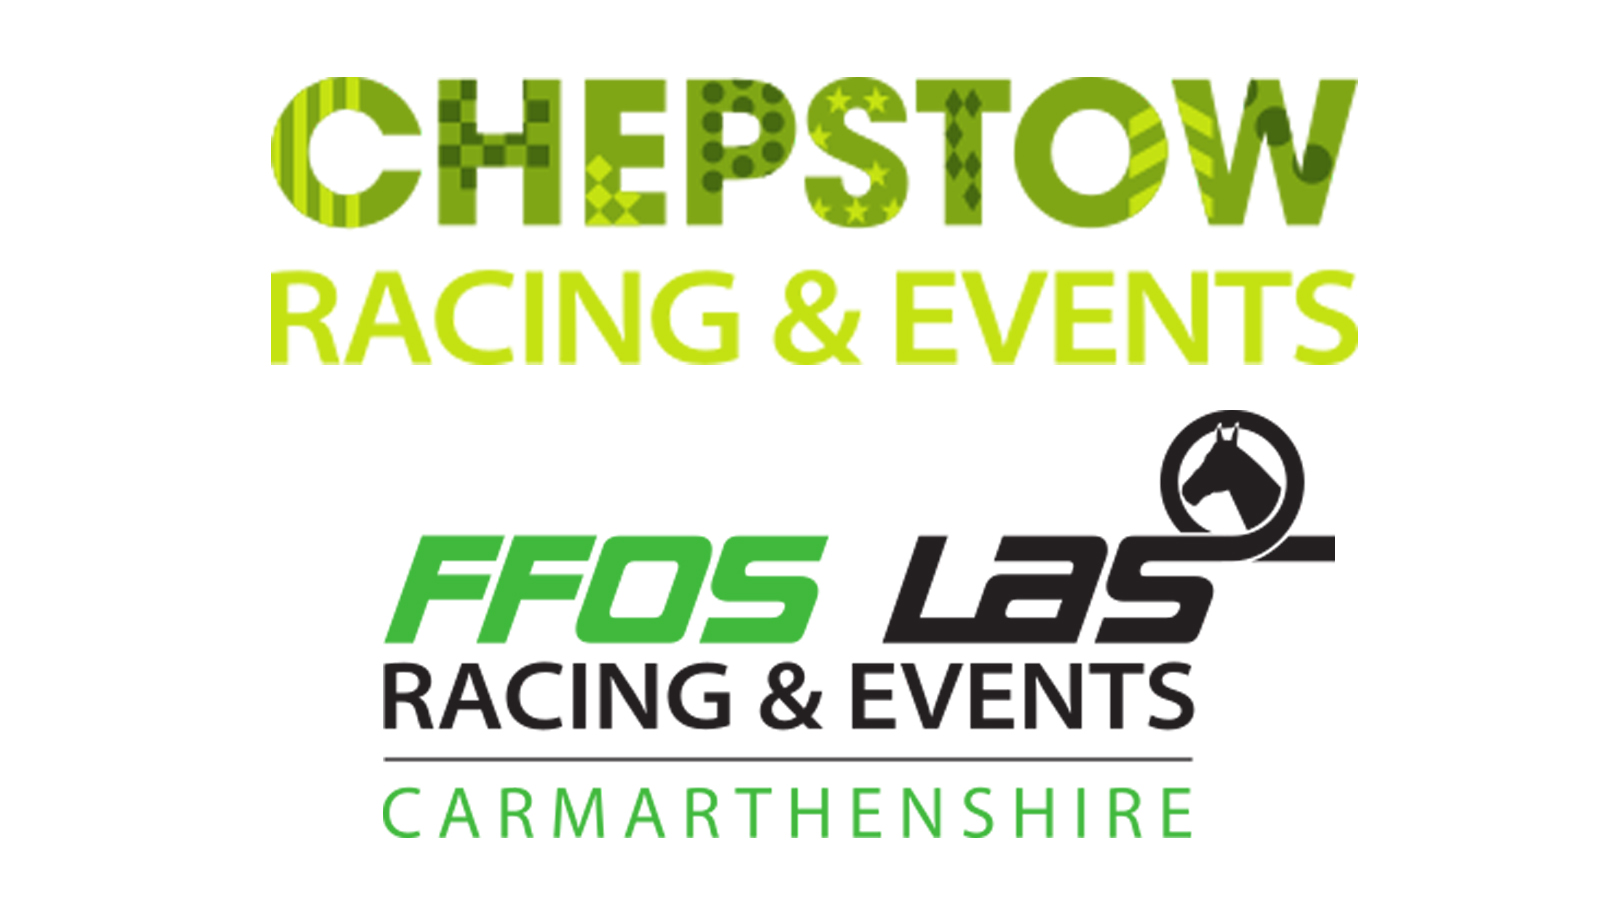 Chepstow and Ffos Las racecourses